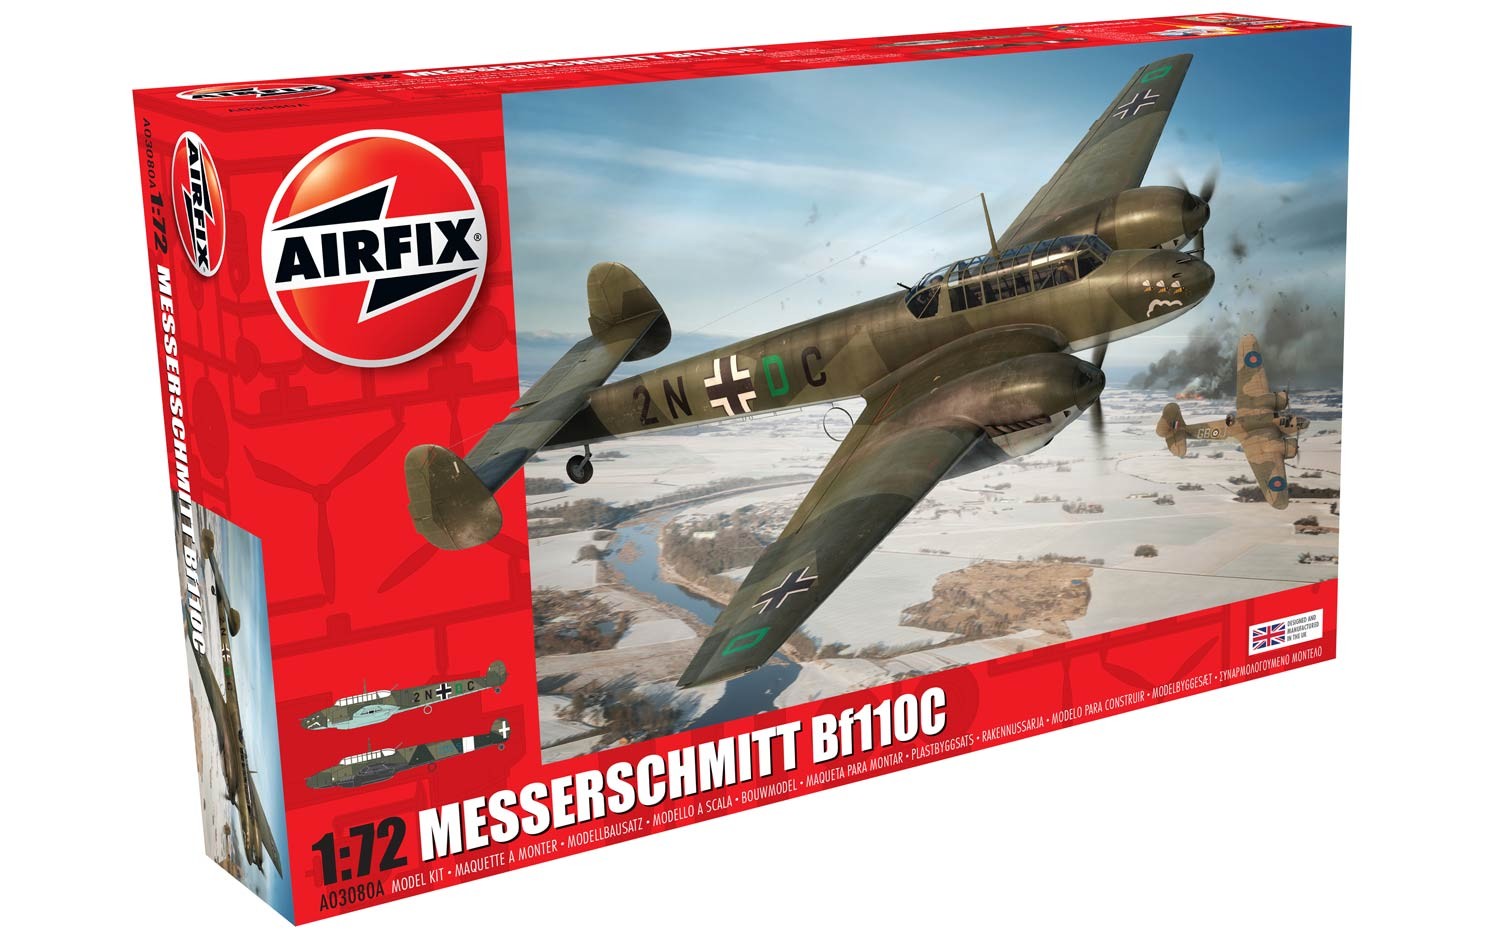 airfixA03080A-Messerschmitt-Bf110C